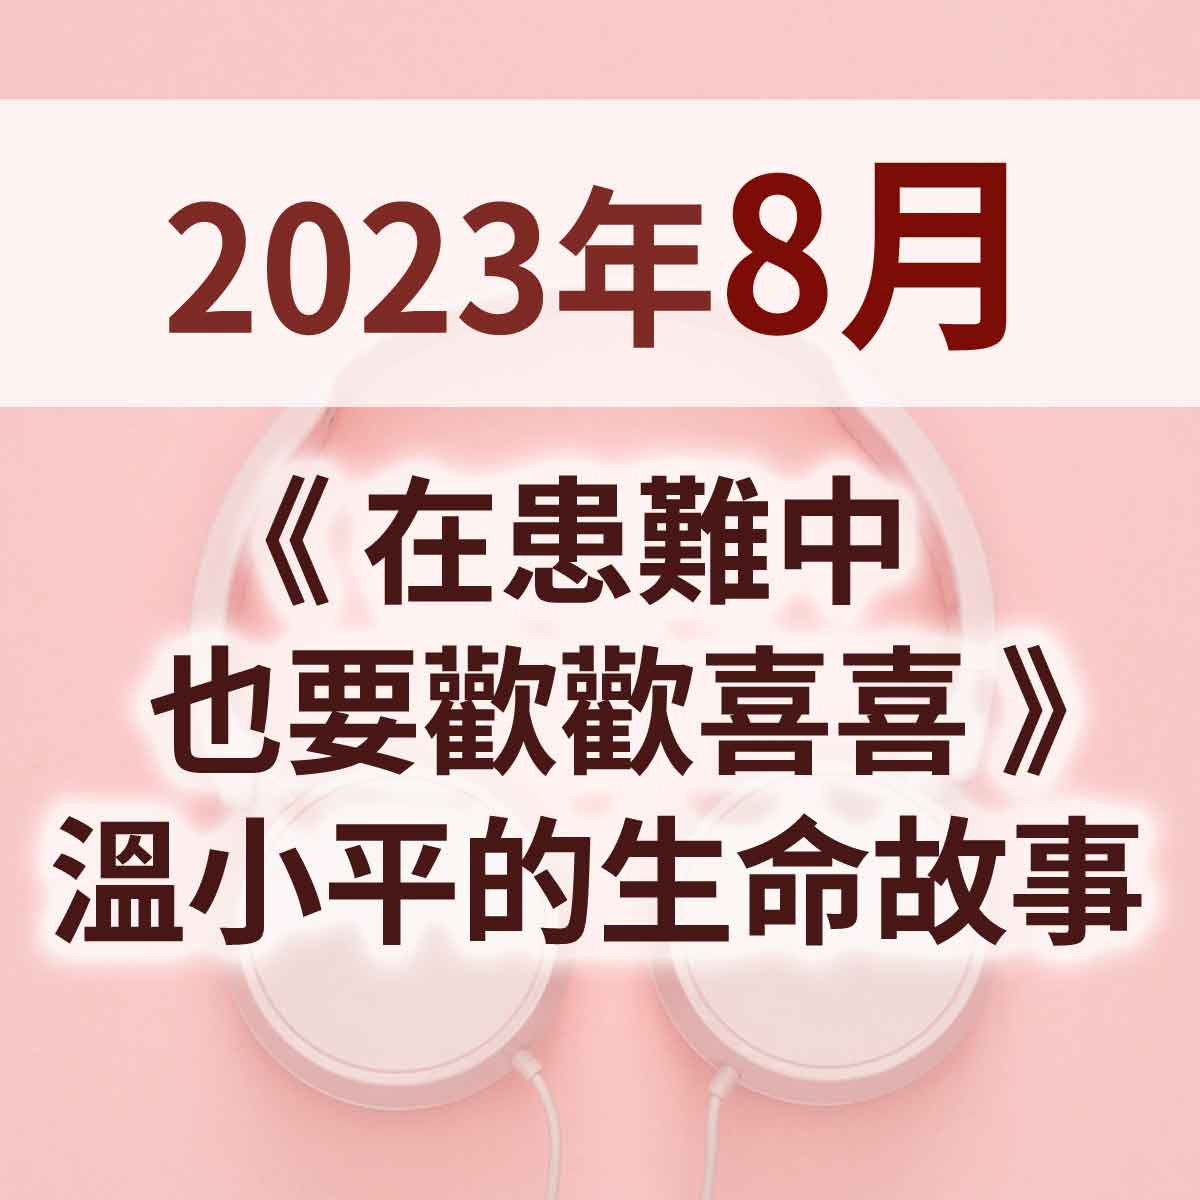 2023年8月 - 《在患難中也要歡歡喜喜》溫小平的生命故事封面圖